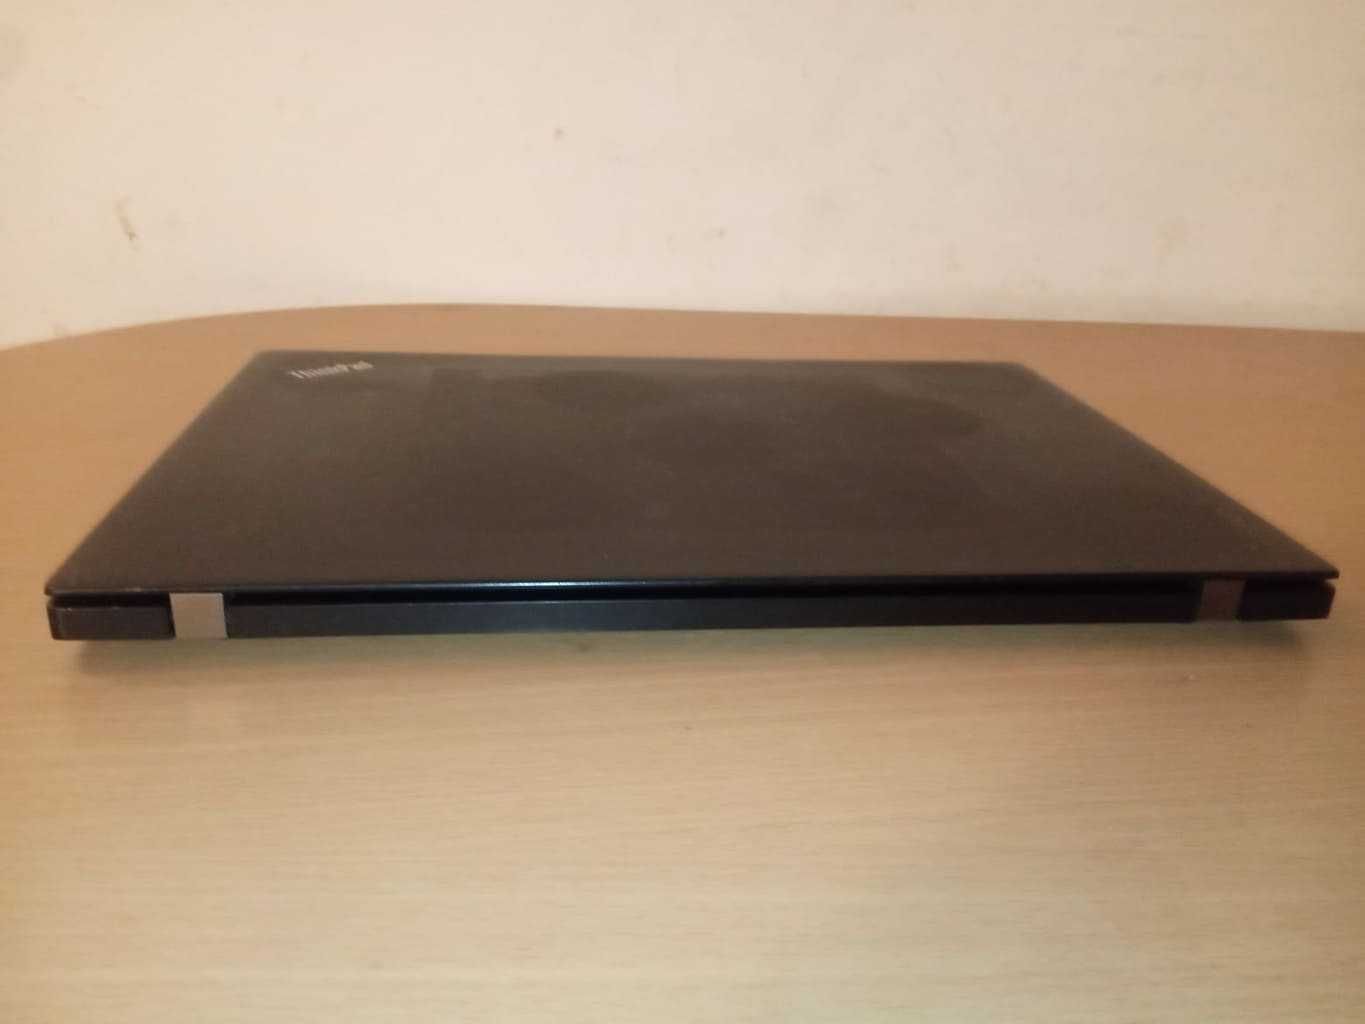 Laptop Lenovo T460s I7-6600U, 8Gb Ram, 256Gb SSD, Full hd, ips!